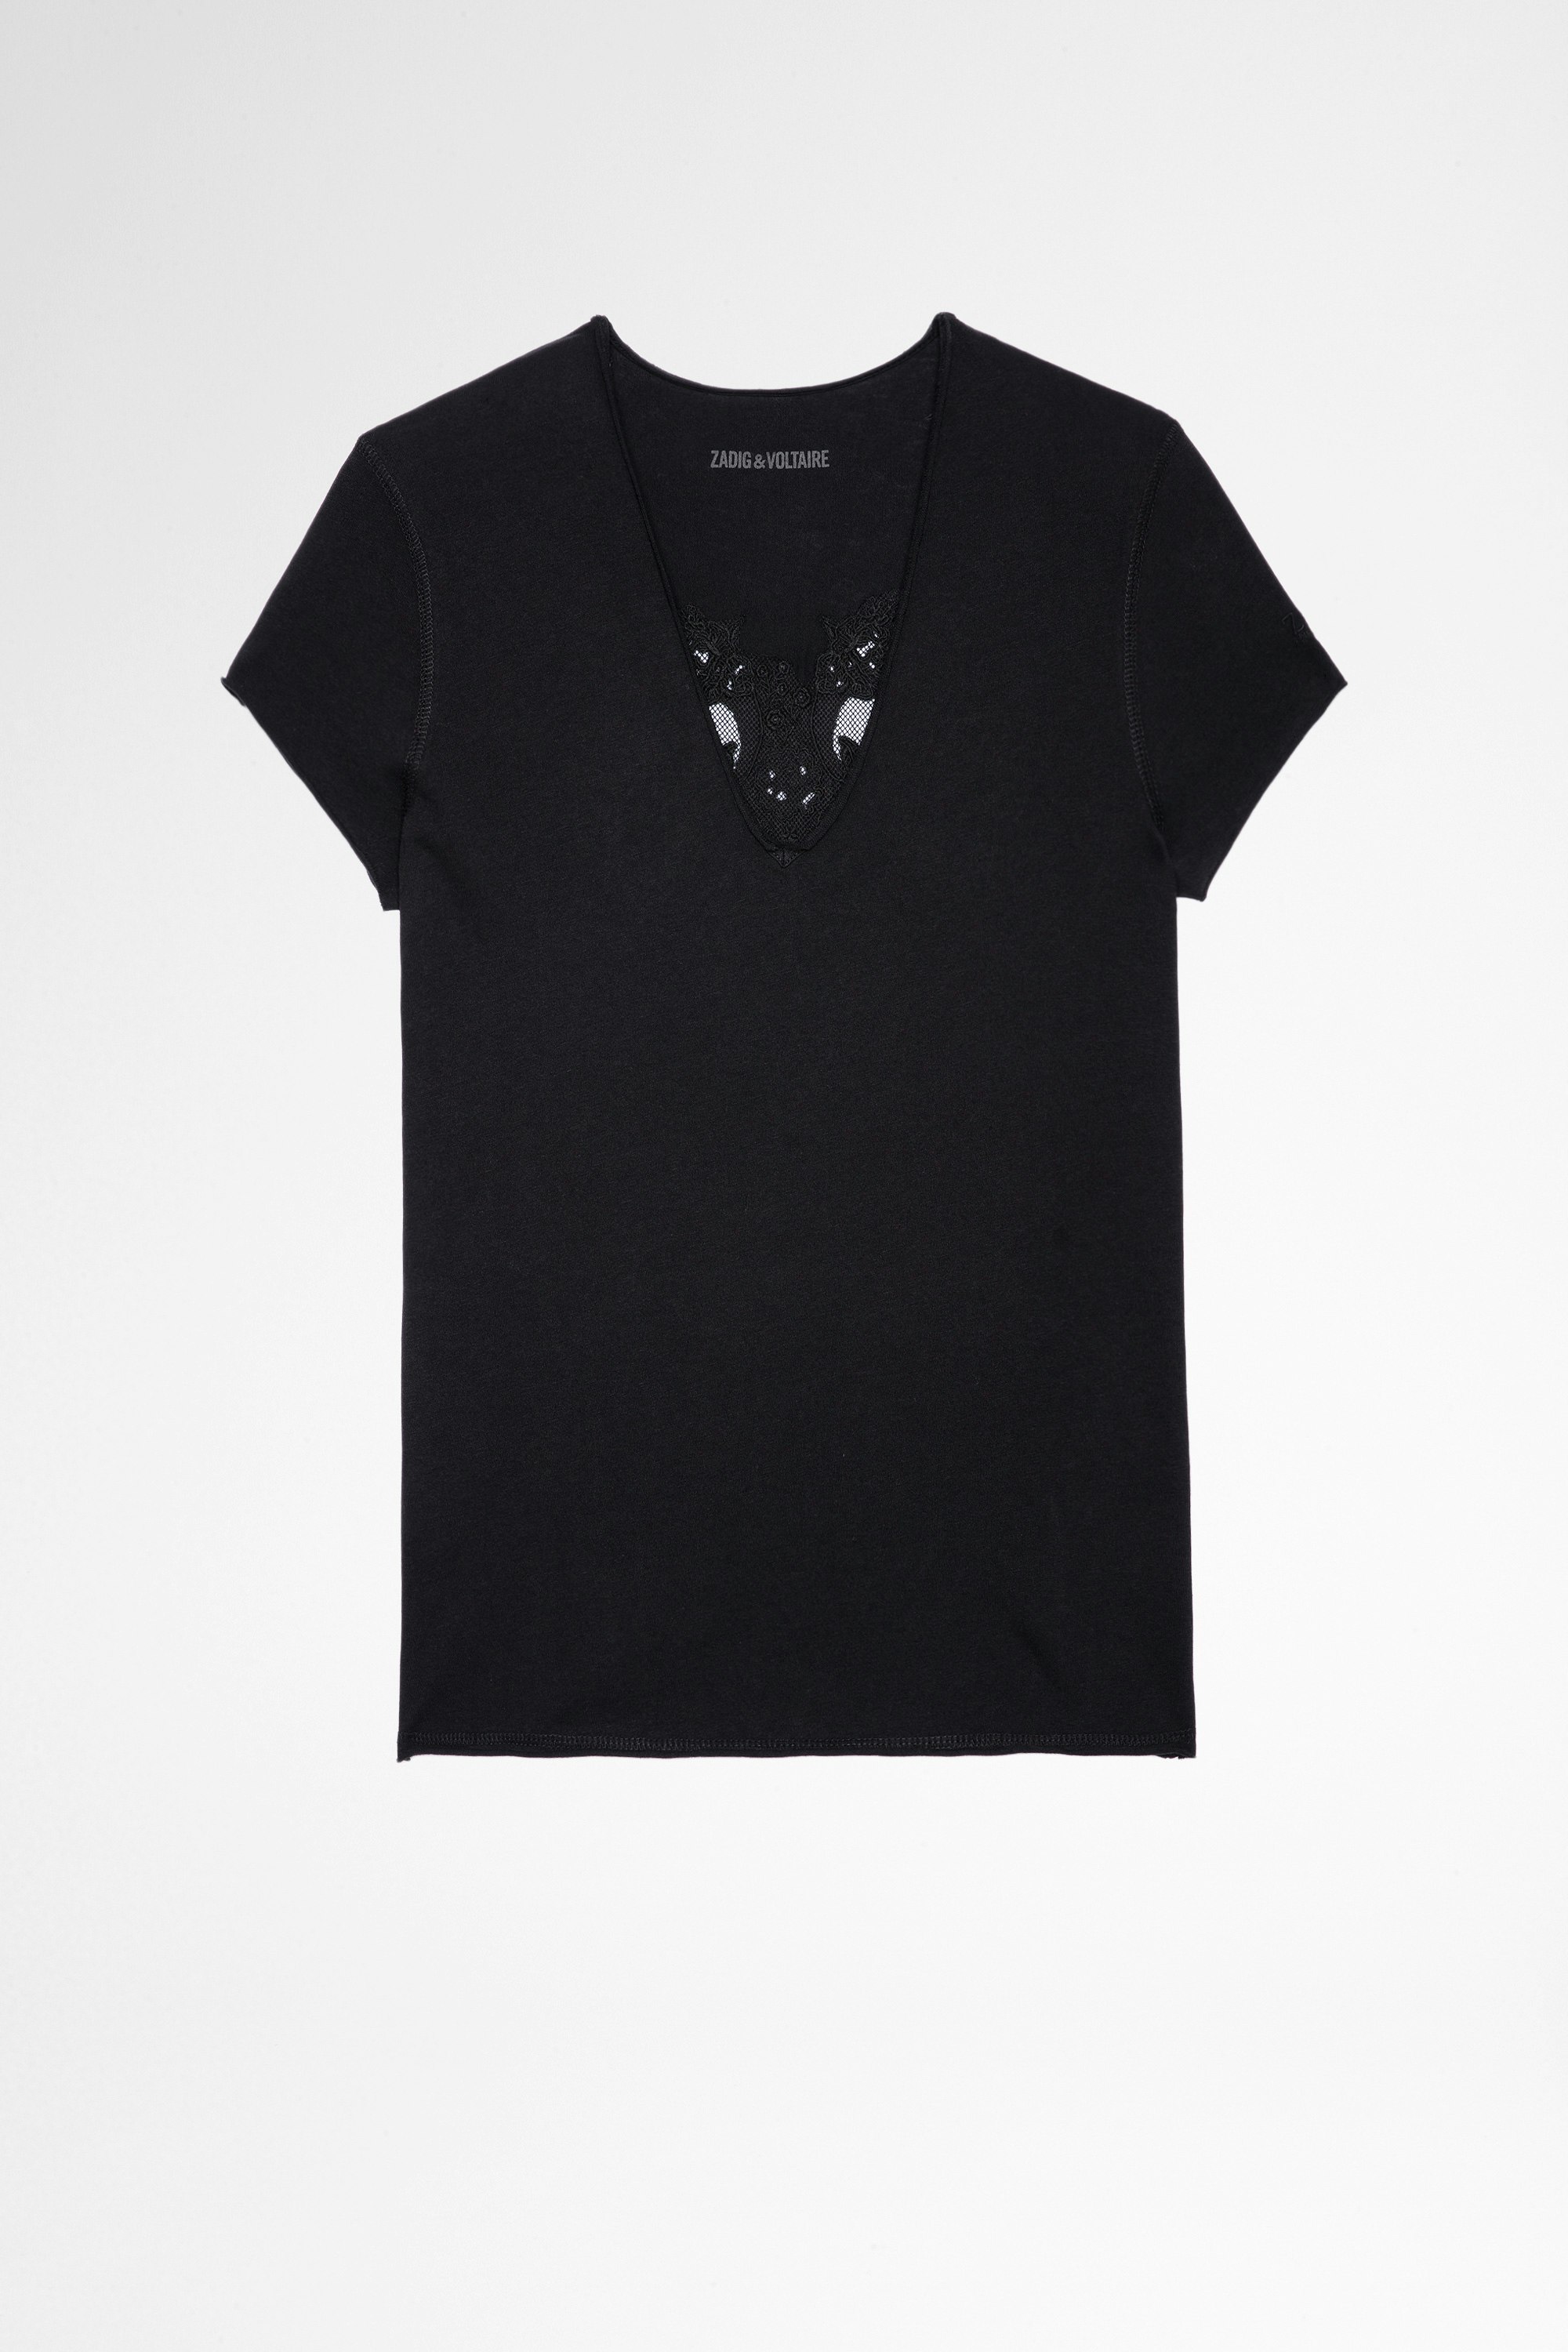 T-shirt Story Fishnet Double Heart T-shirt in cotone nero con inserti a teschio trasparenti sul retro